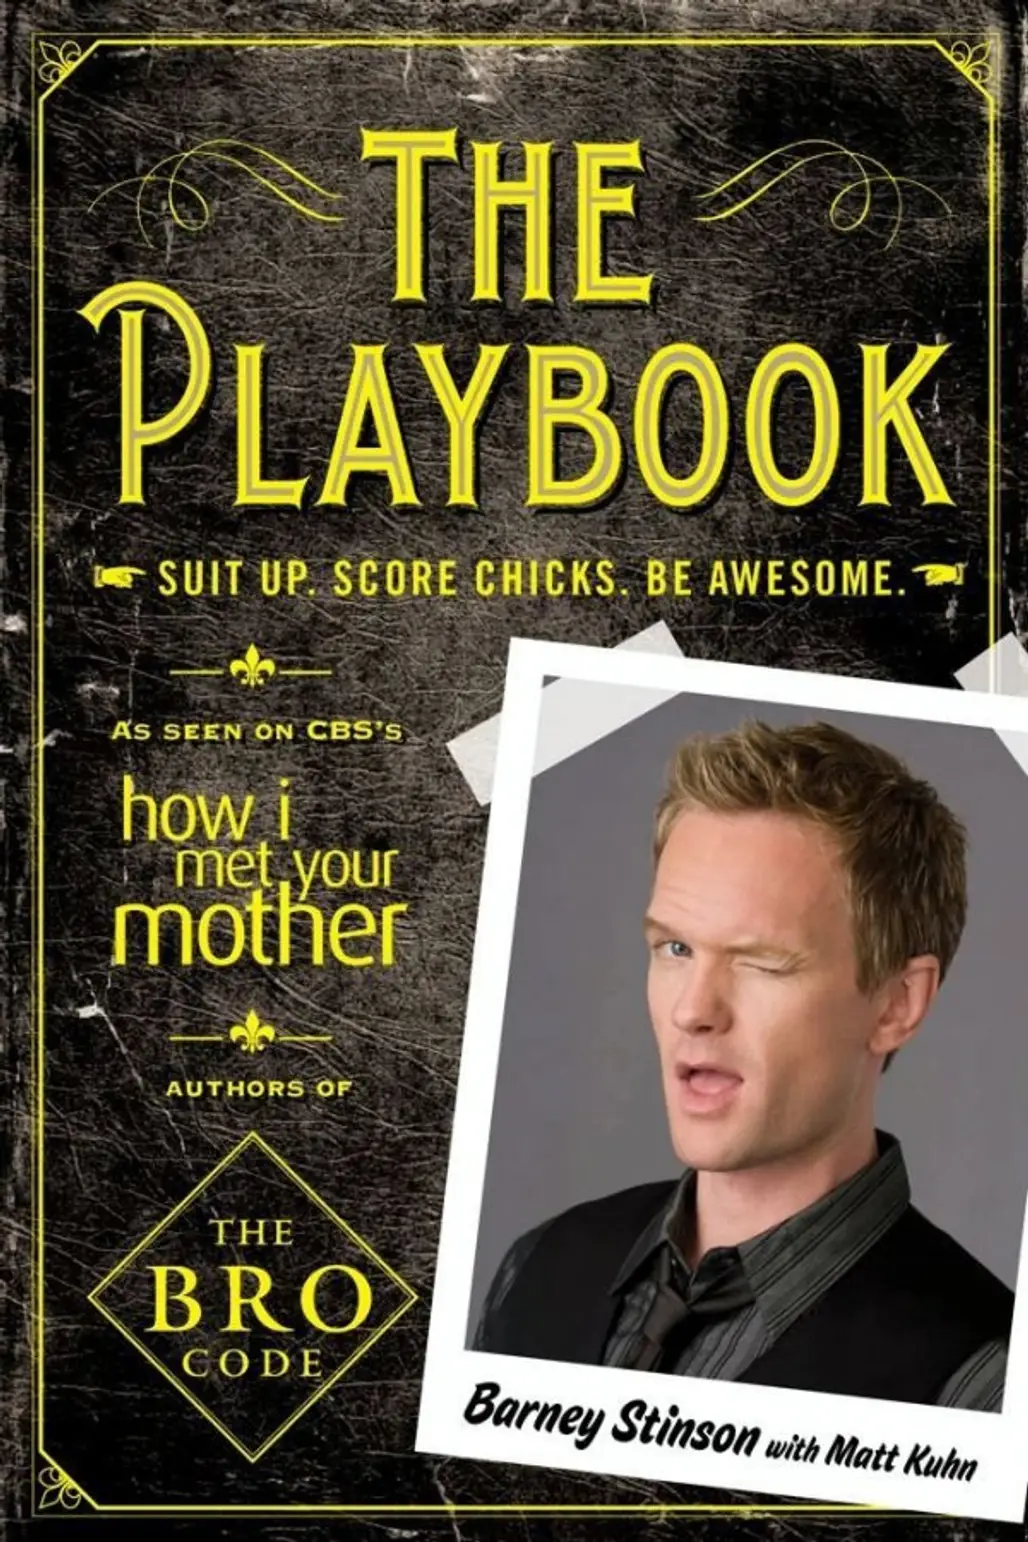 The Playbook by Matt Kuhn